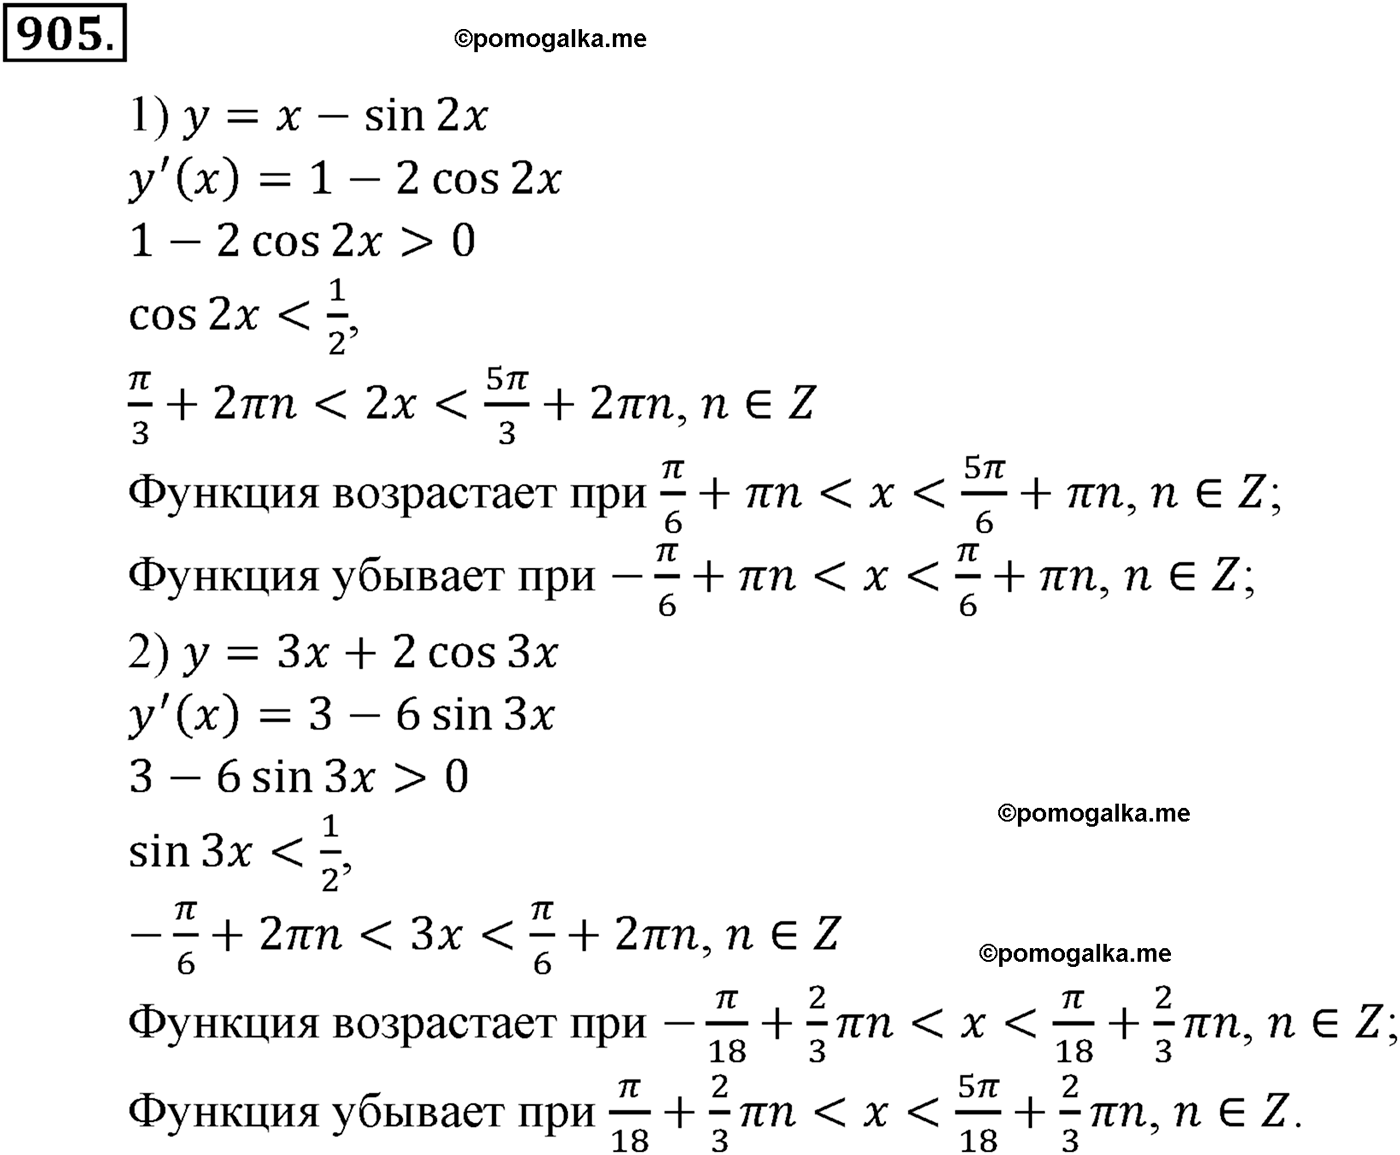 разбор задачи №905 по алгебре за 10-11 класс из учебника Алимова, Колягина